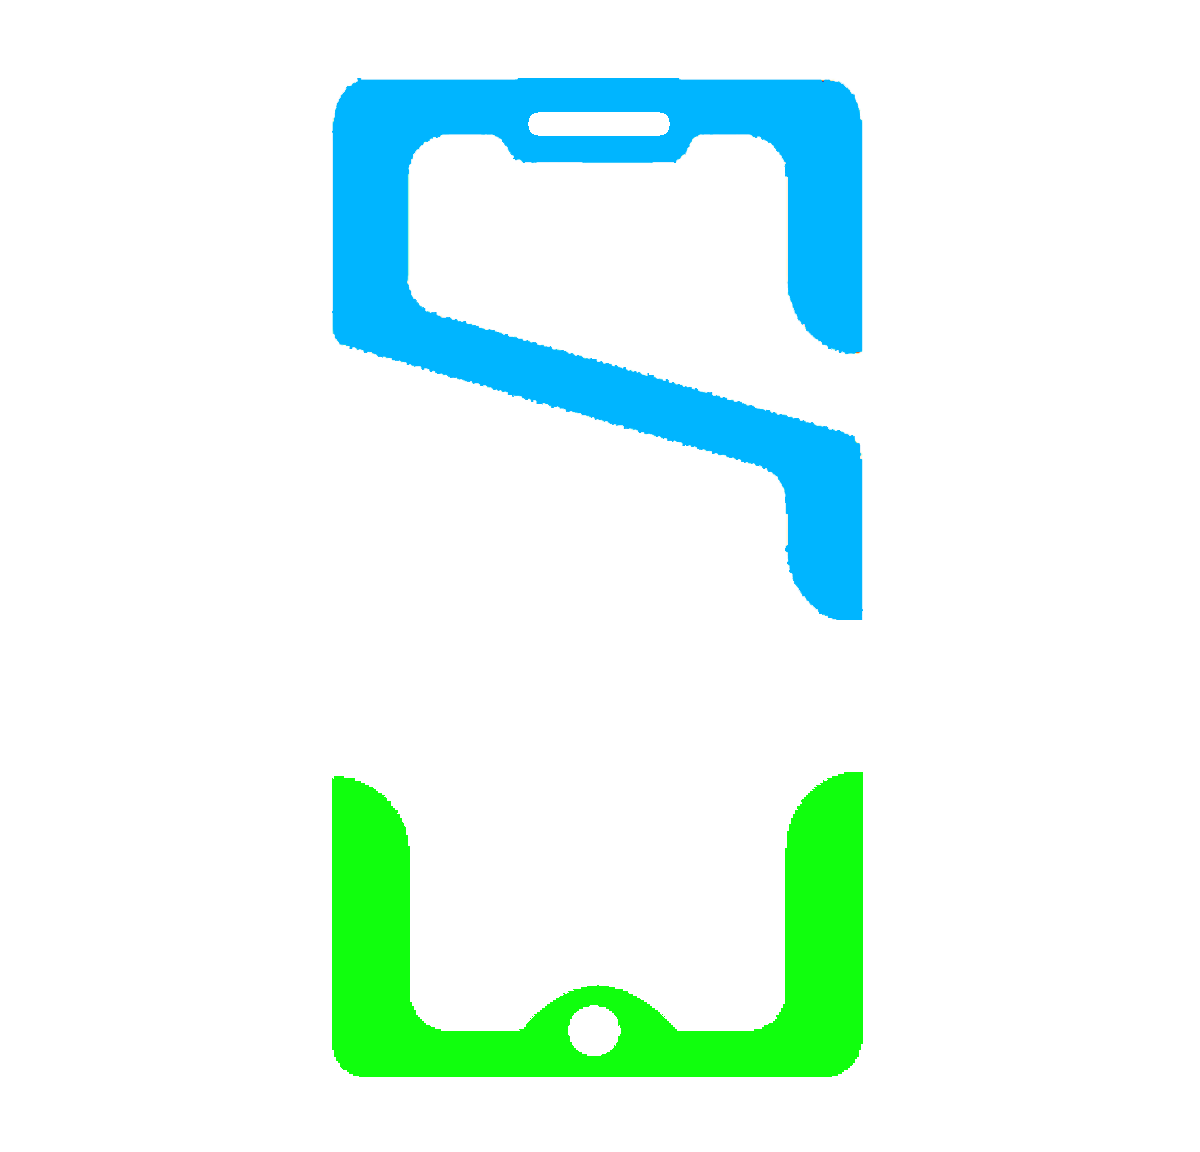 S.care - Địa chỉ sửa chữa điện thoại, máy tính bảng chuyên nghiệp